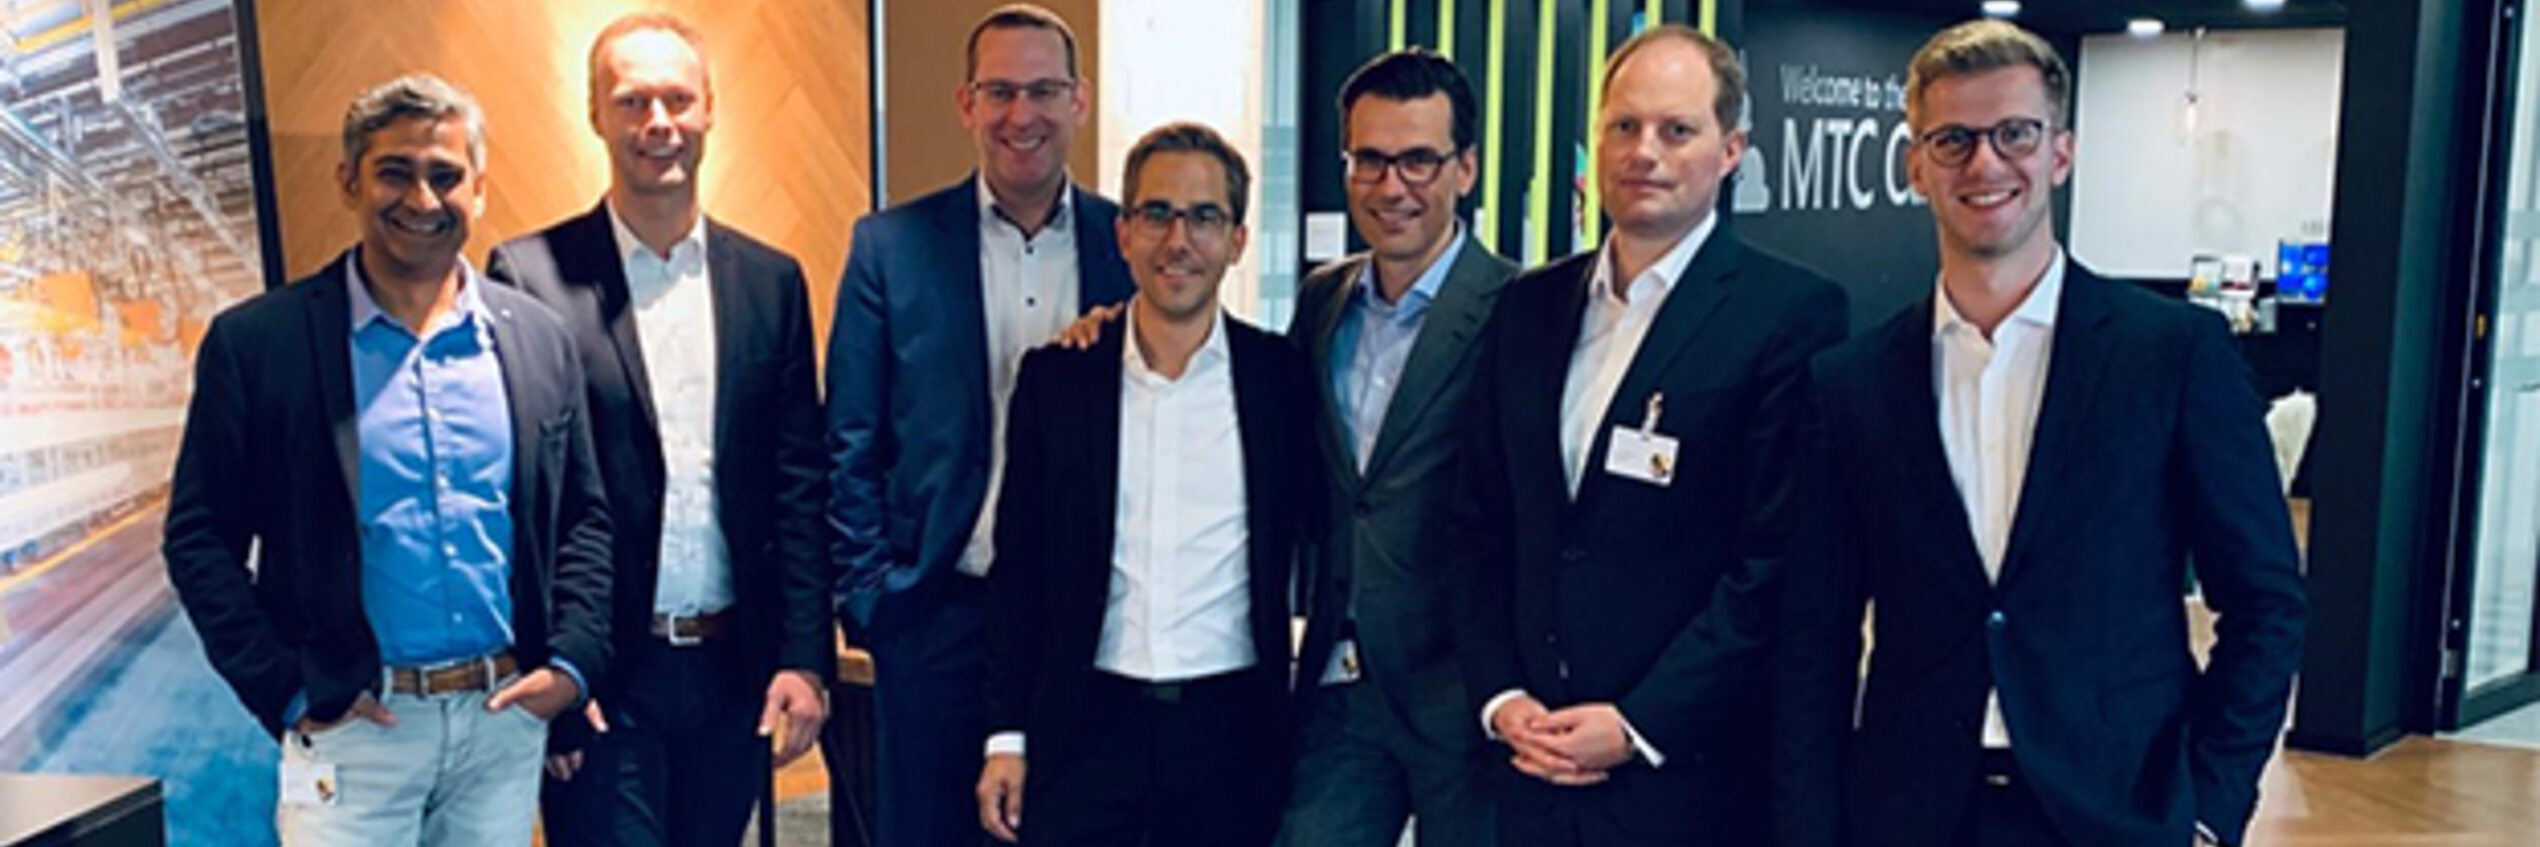 Dr. Christof Bosbach, CEO de Diehl Metering, rejoint le Conseil consultatif de l’Industry Day